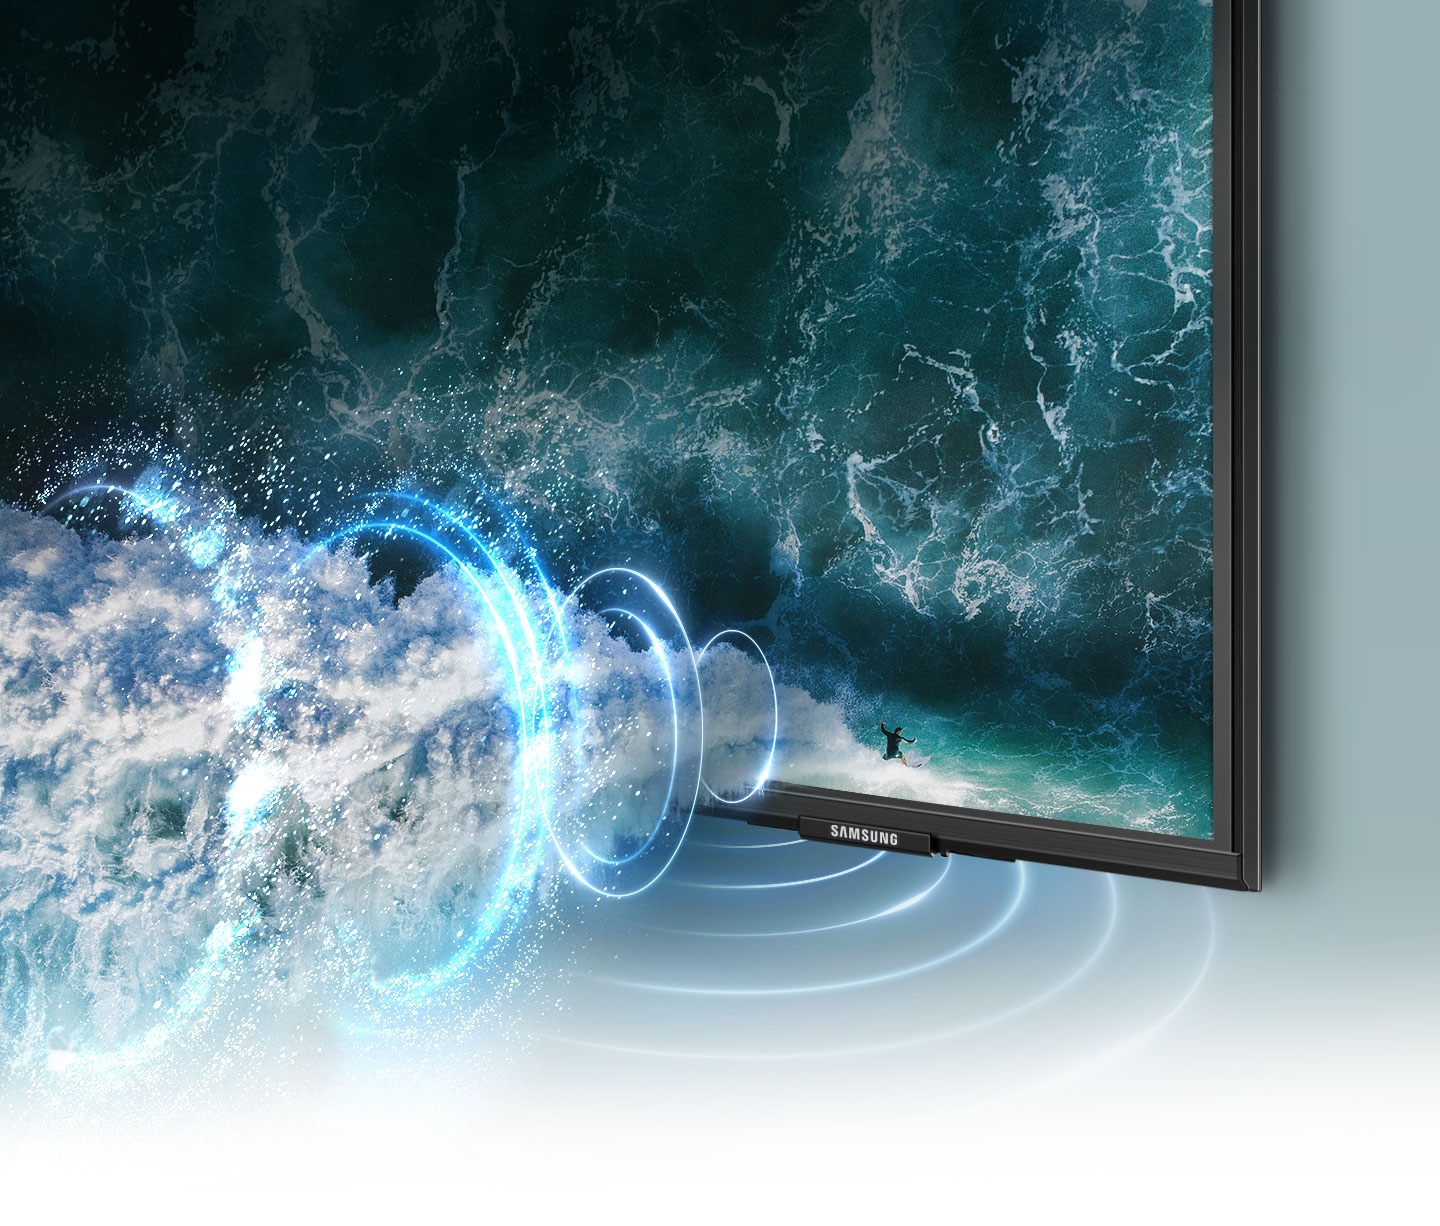 Simulovaná grafika zvukových vln předvádí zvukovou technologii sledování objektu, protože sleduje surfaře na celé televizní obrazovce.